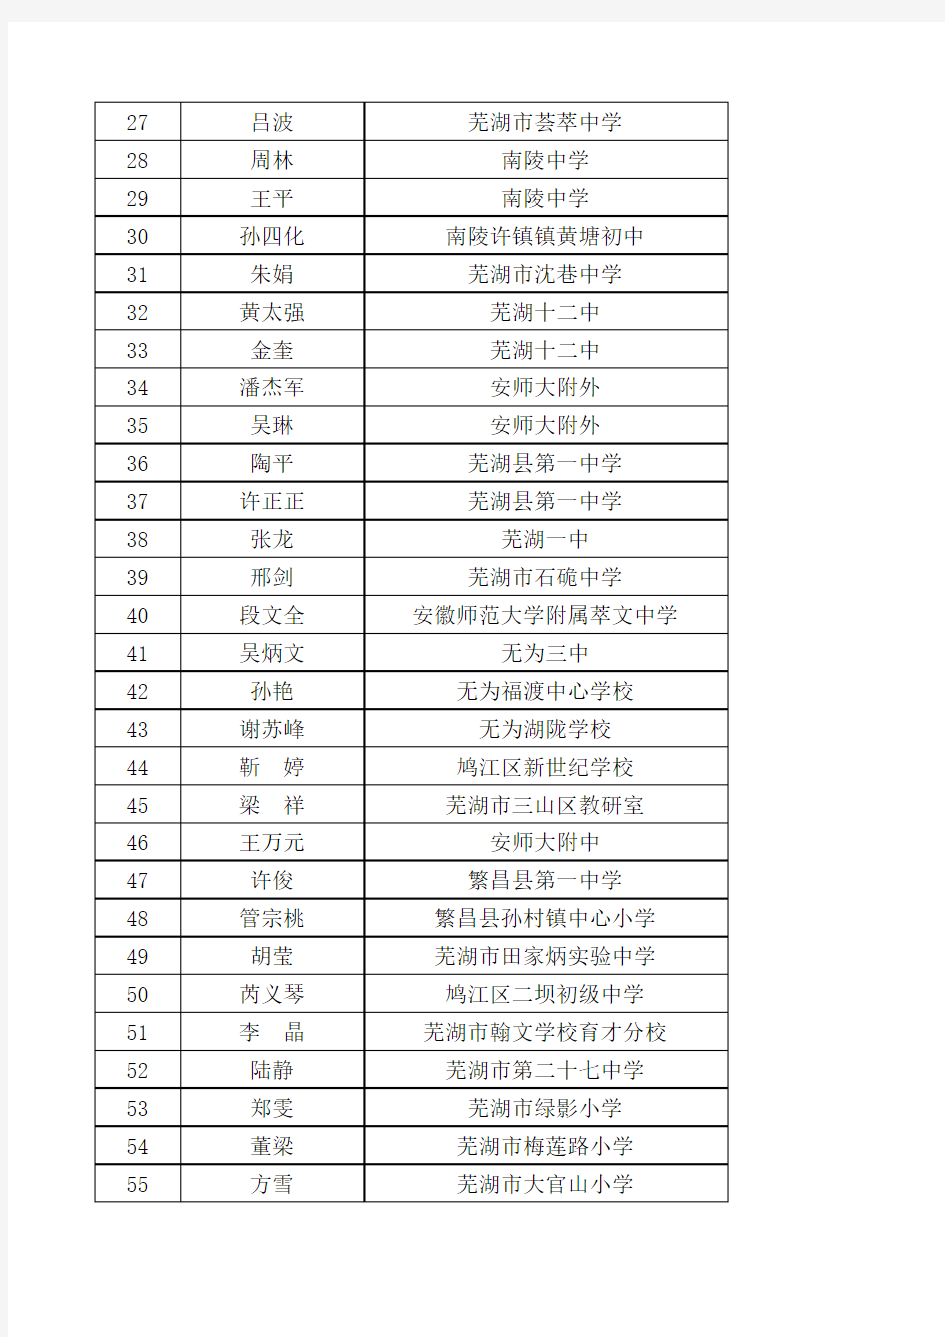 芜湖市第五批骨干教师获评名单4